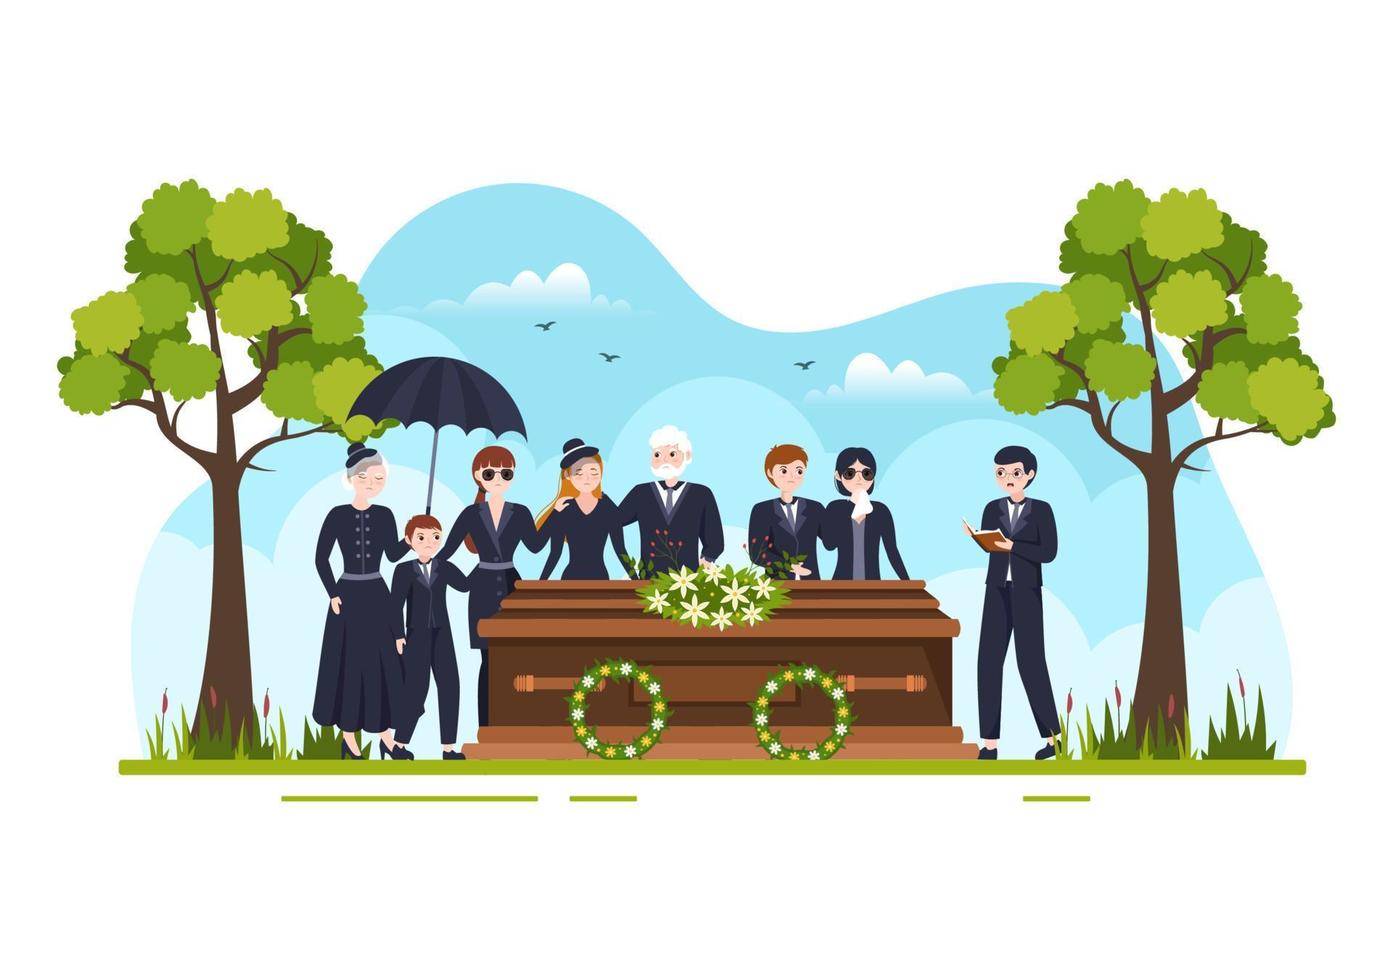 begravning ceremoni i grav av ledsen människor i svart kläder stående och krans runt om Kista i platt tecknad serie hand dragen mall illustration vektor